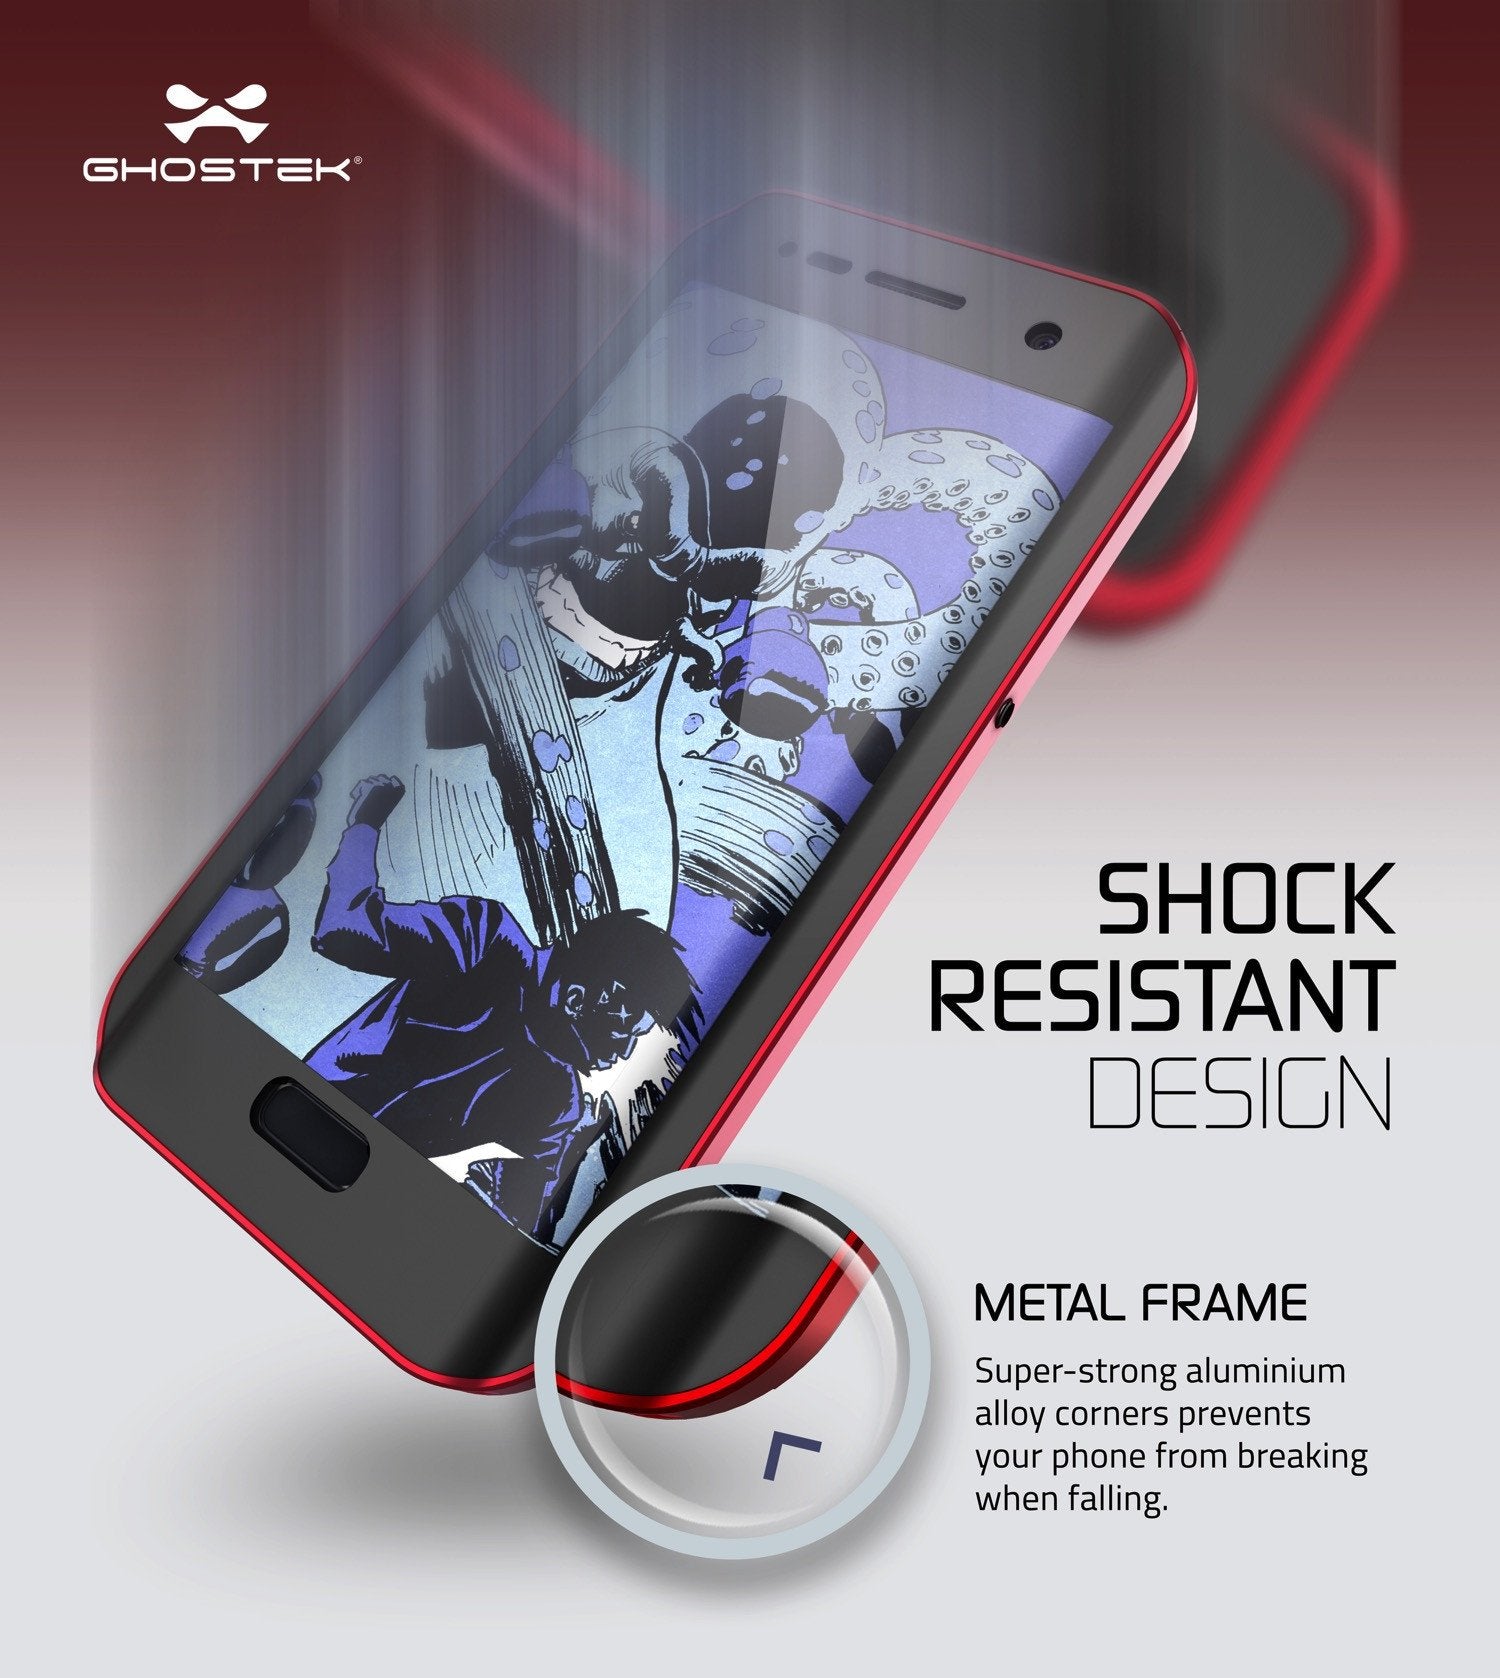 Galaxy S7 EDGE Waterproof Case, Ghostek Atomic 2.0 Red Shock/Dirt/Snow Proof | Lifetime Warranty - PunkCase NZ